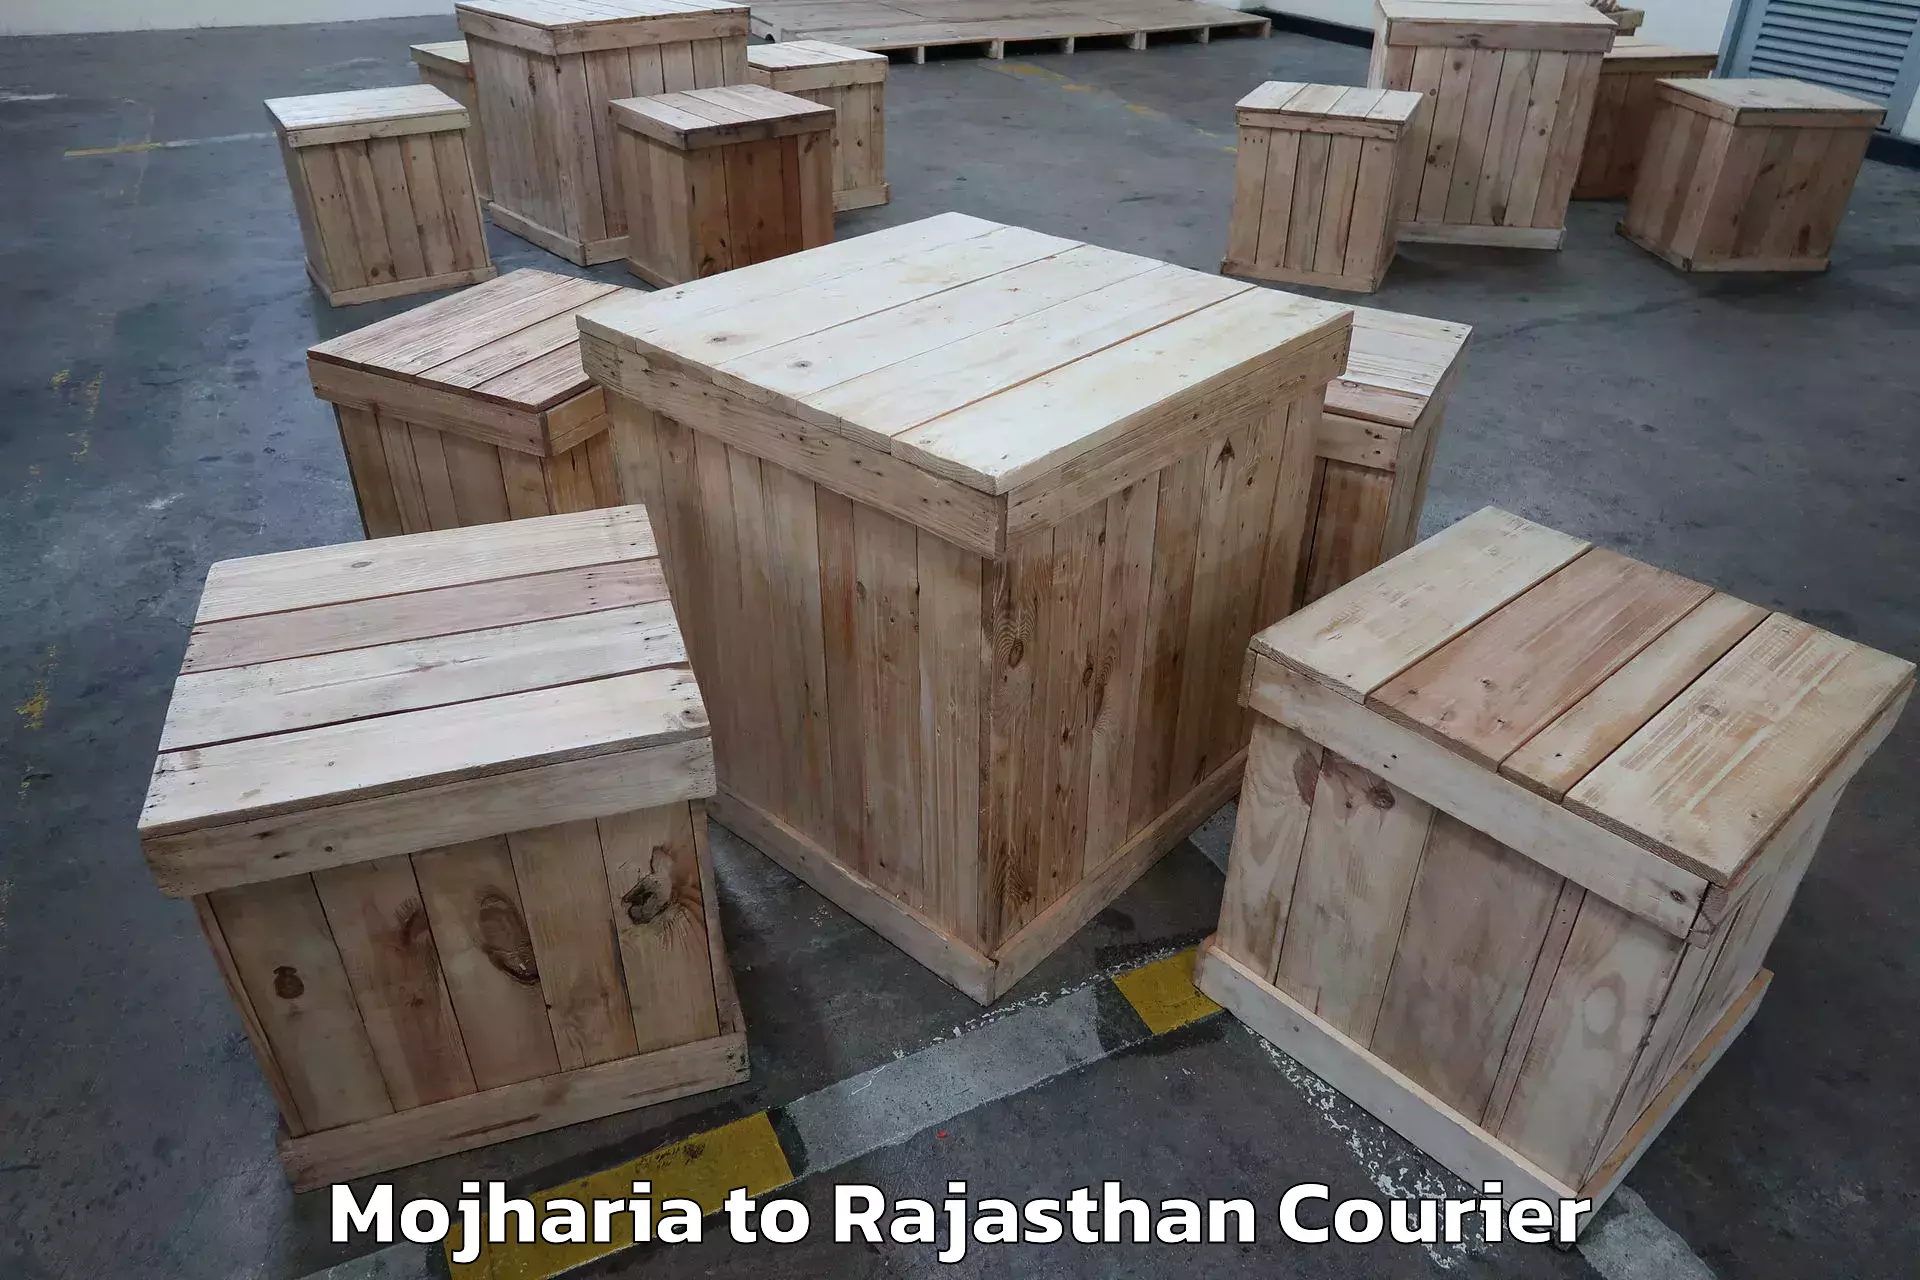 Trusted moving company Mojharia to Taranagar